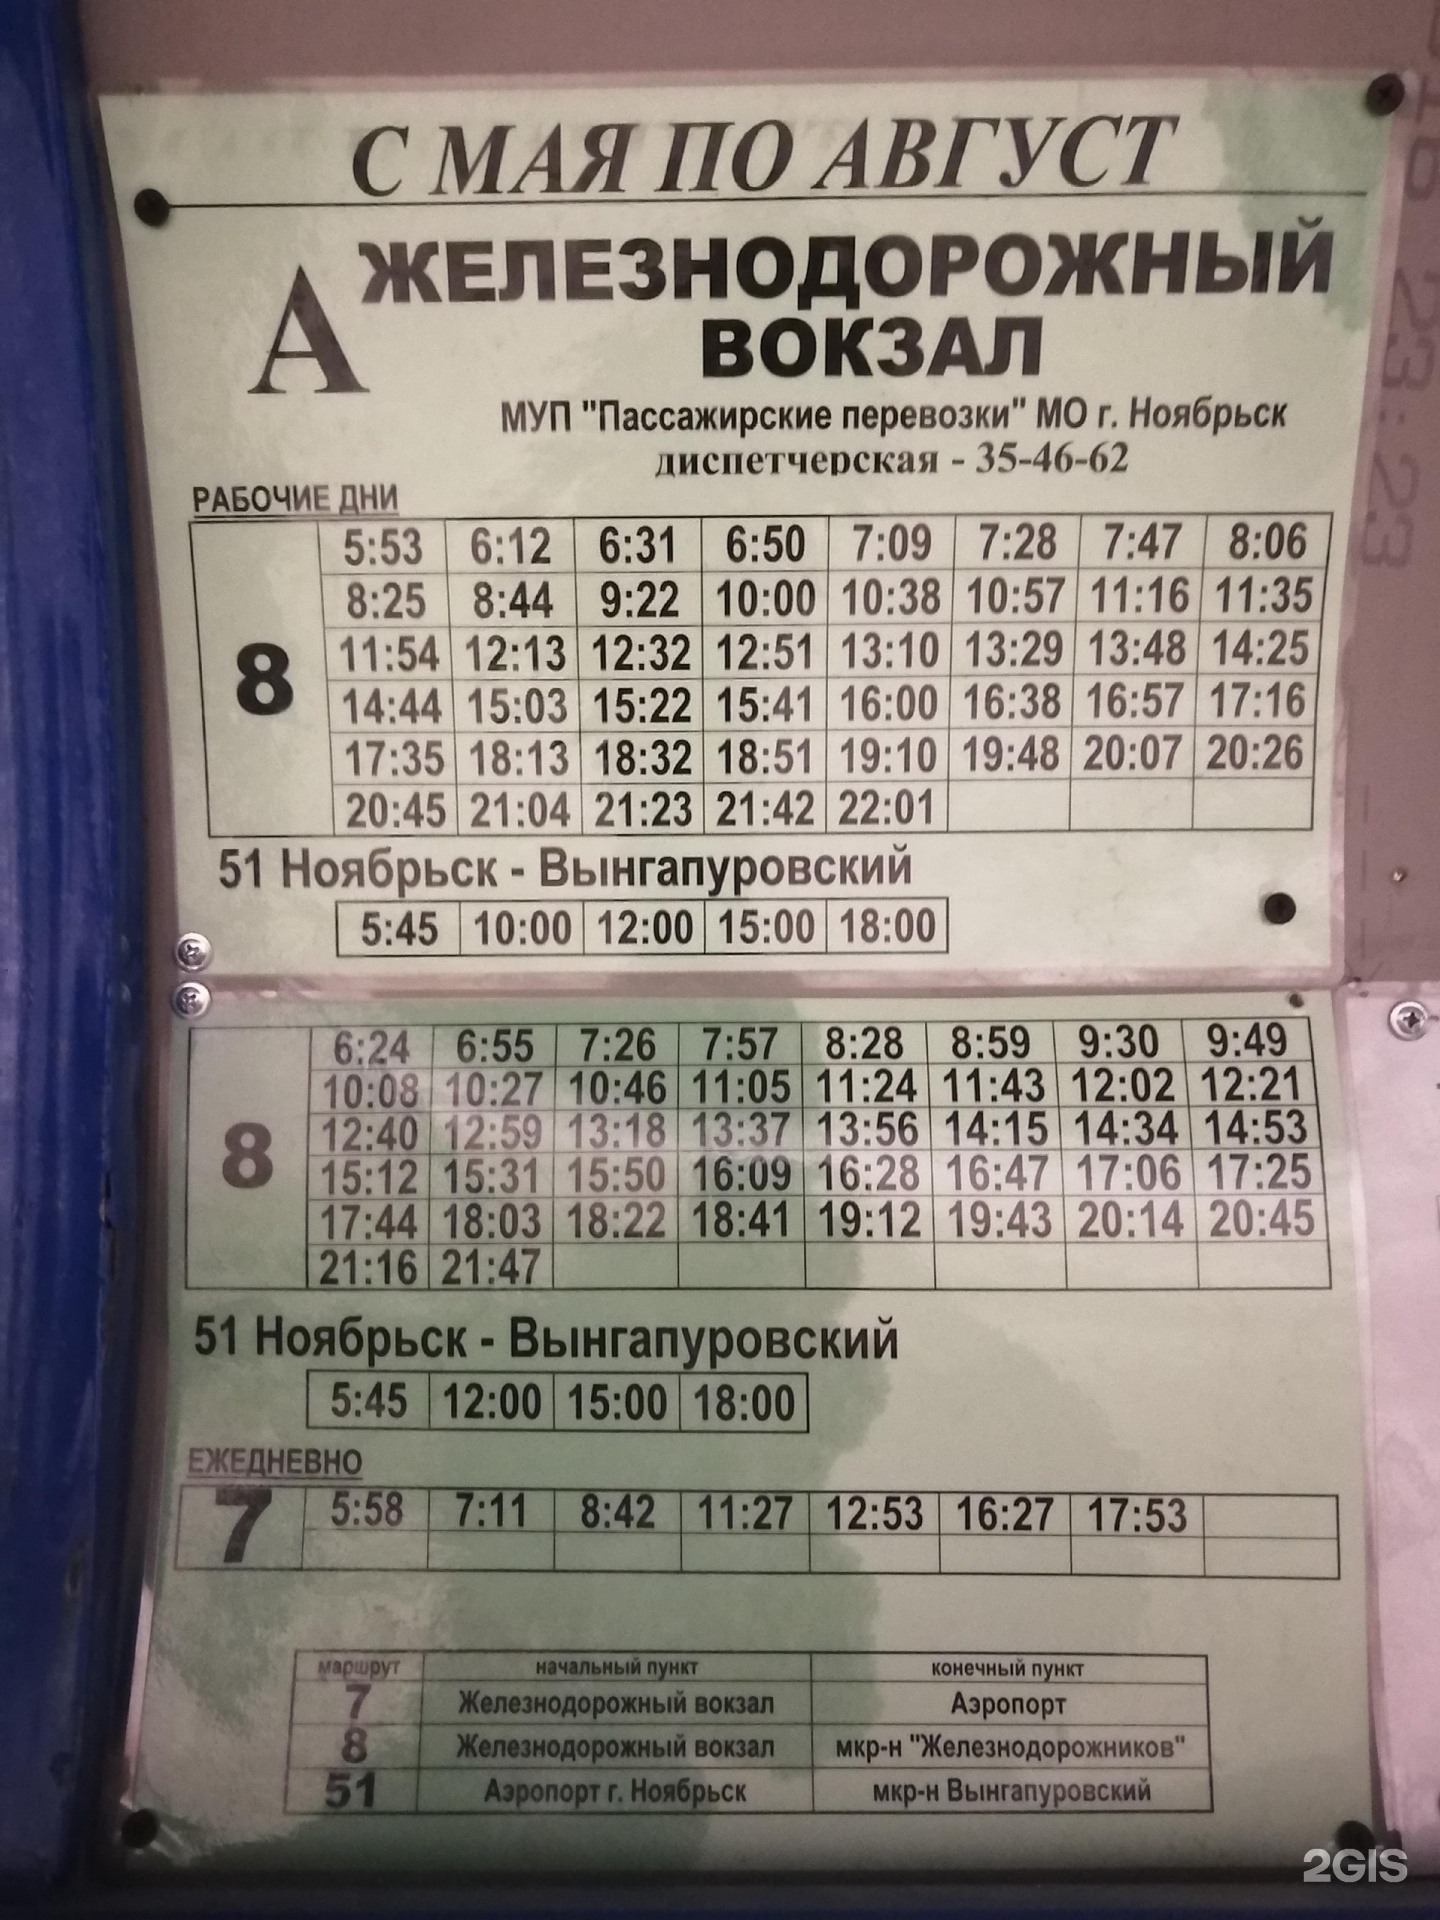 Расписание маршруток муравленко ноябрьск